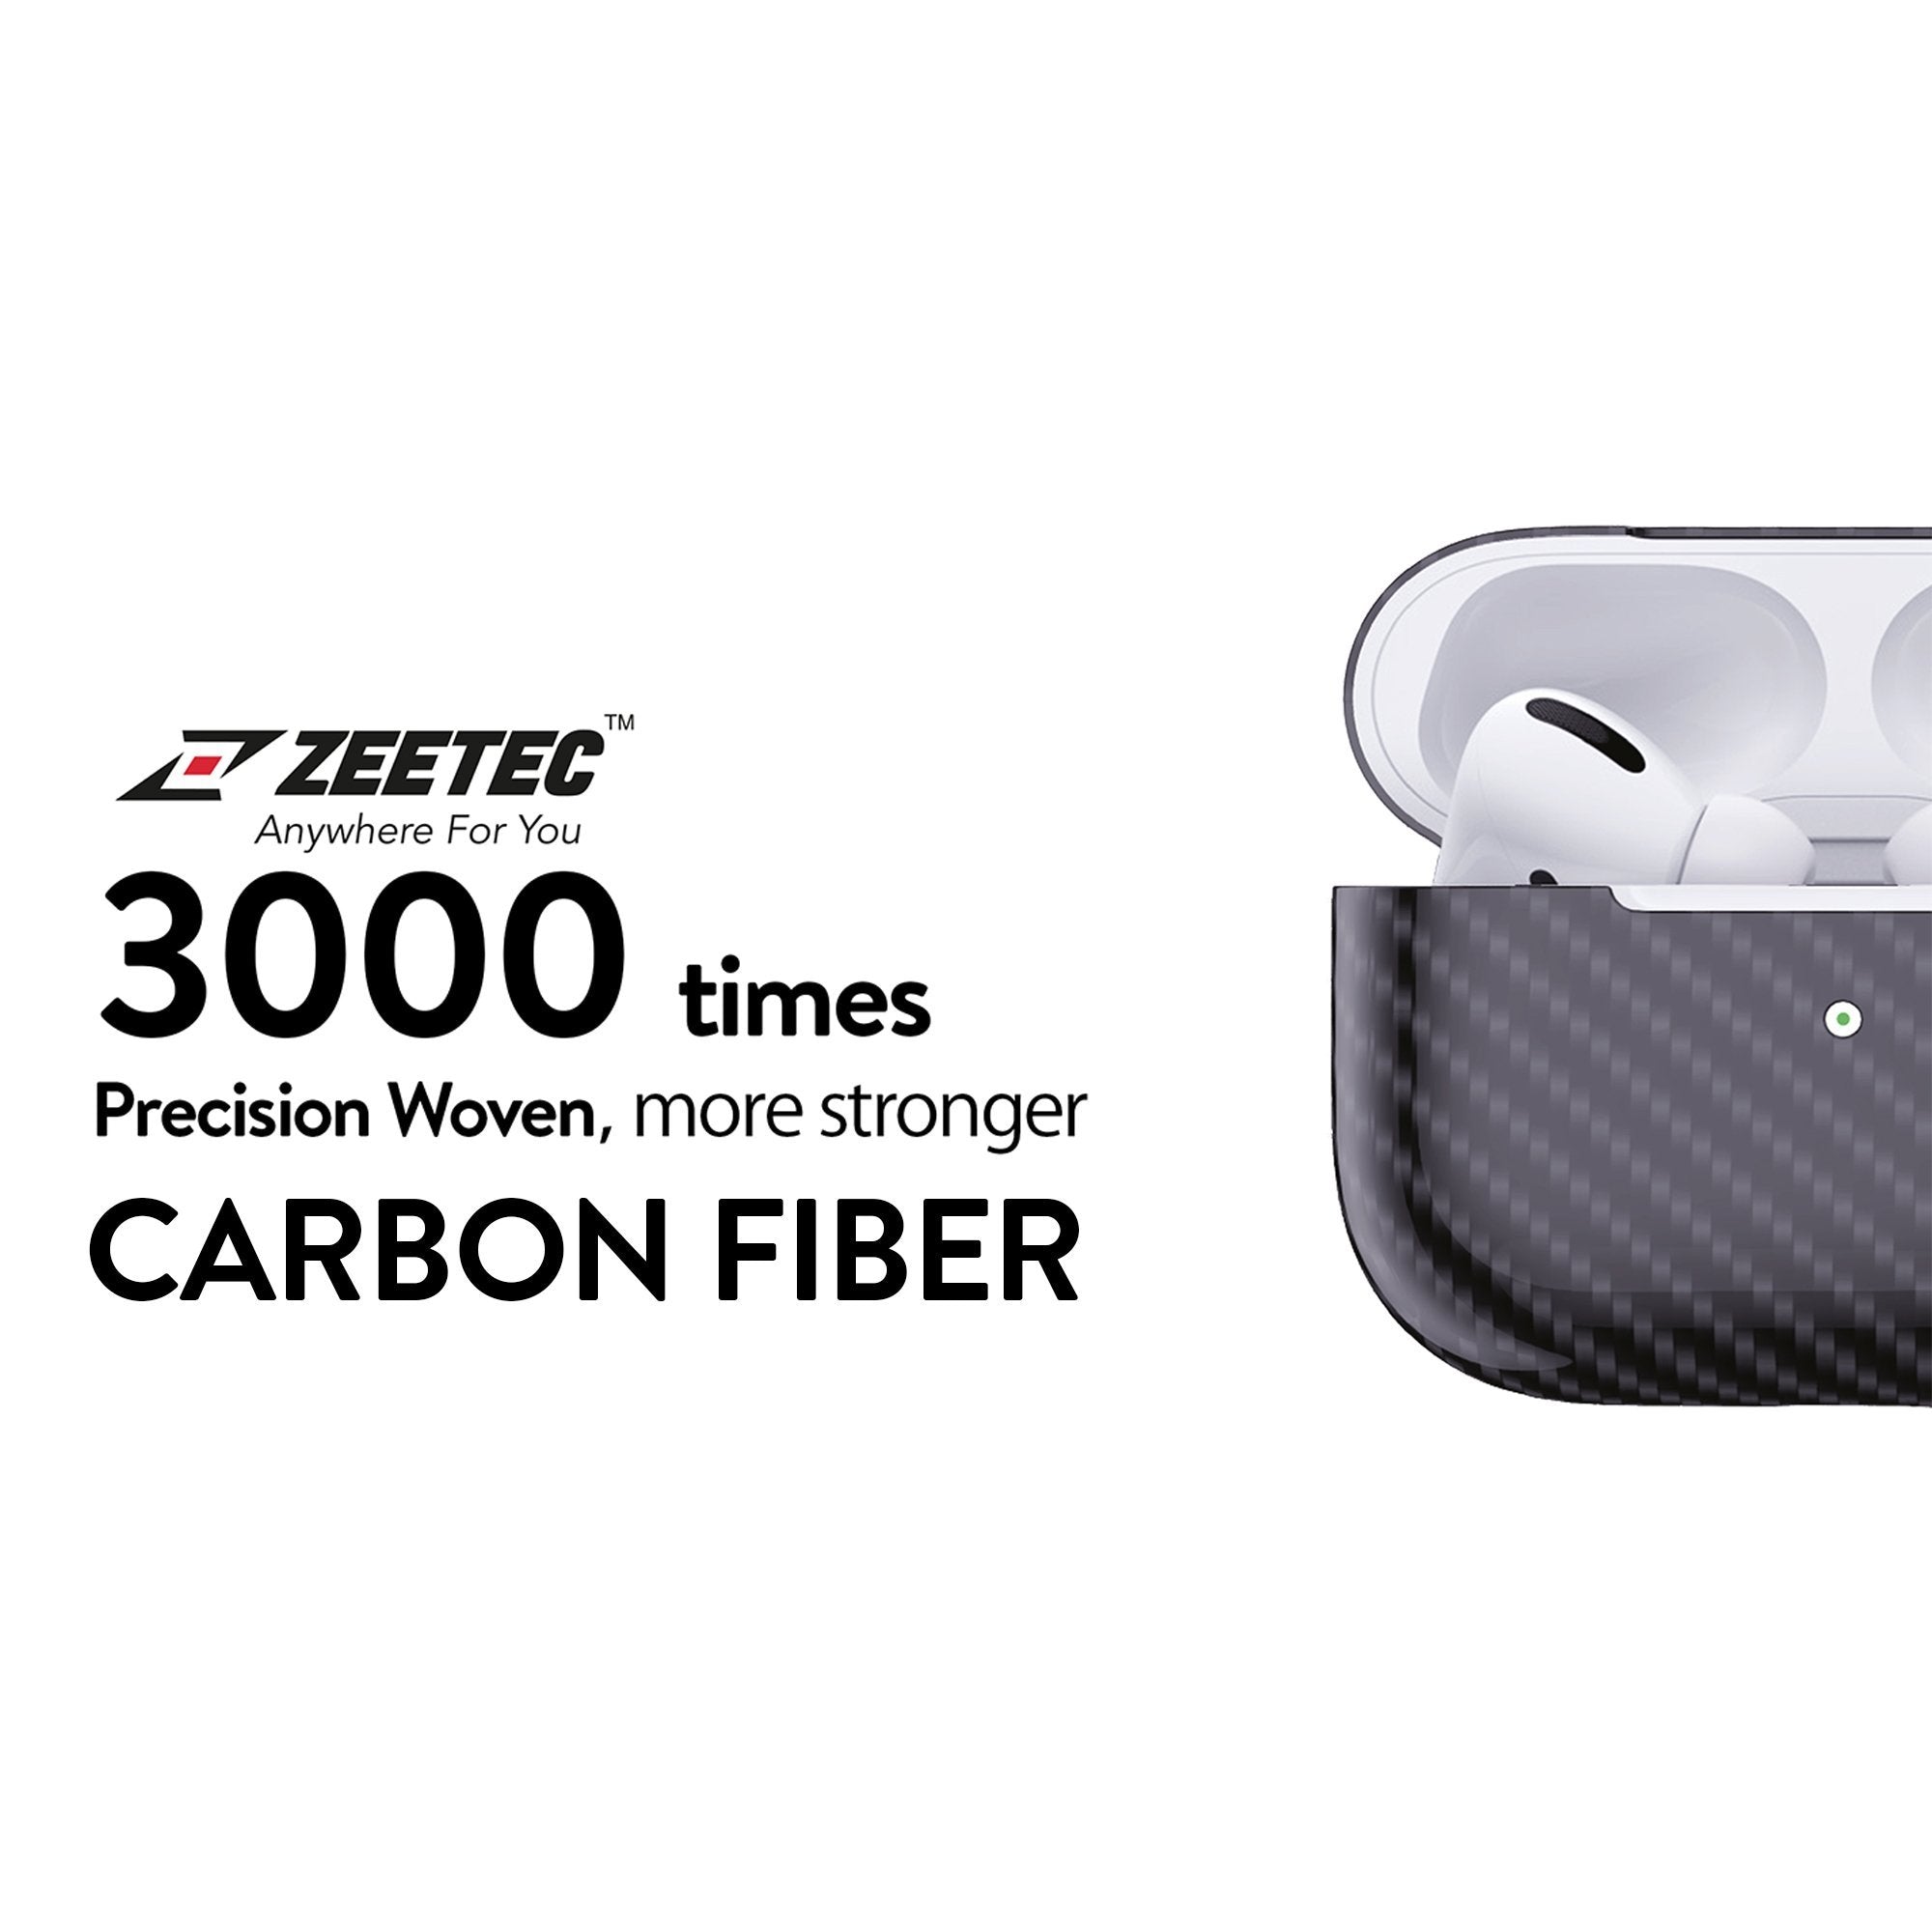 Zeetec Nitro Series Carbon Fiber Case for AirPods 1, Jet Black AirPods Case Zeetec 